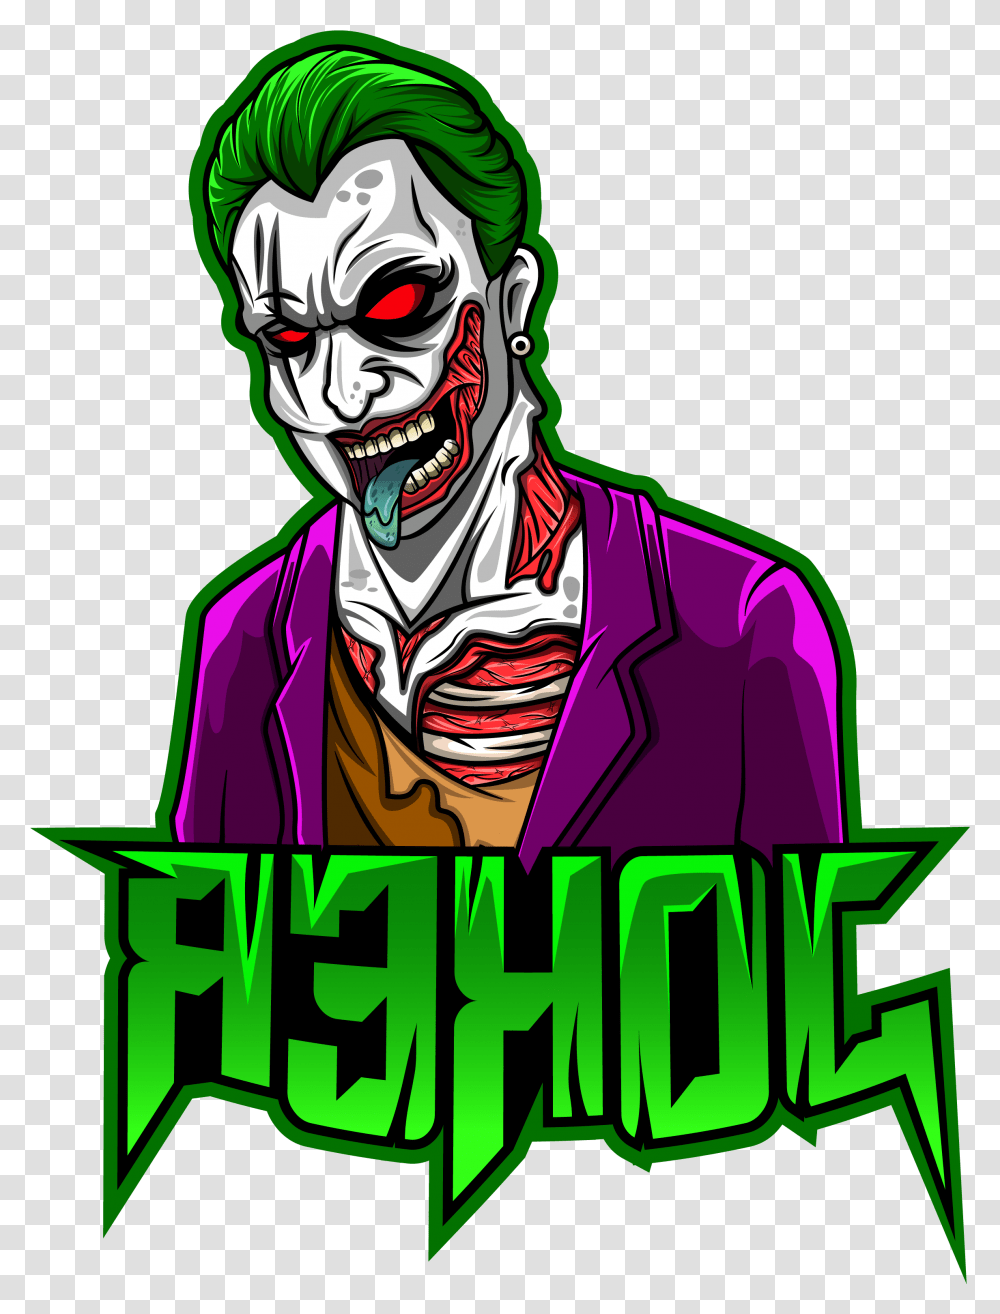 Cartoon Joker Mascot Logo Design By Joker Mascot Logo, Poster, Advertisement, Label, Text Transparent Png